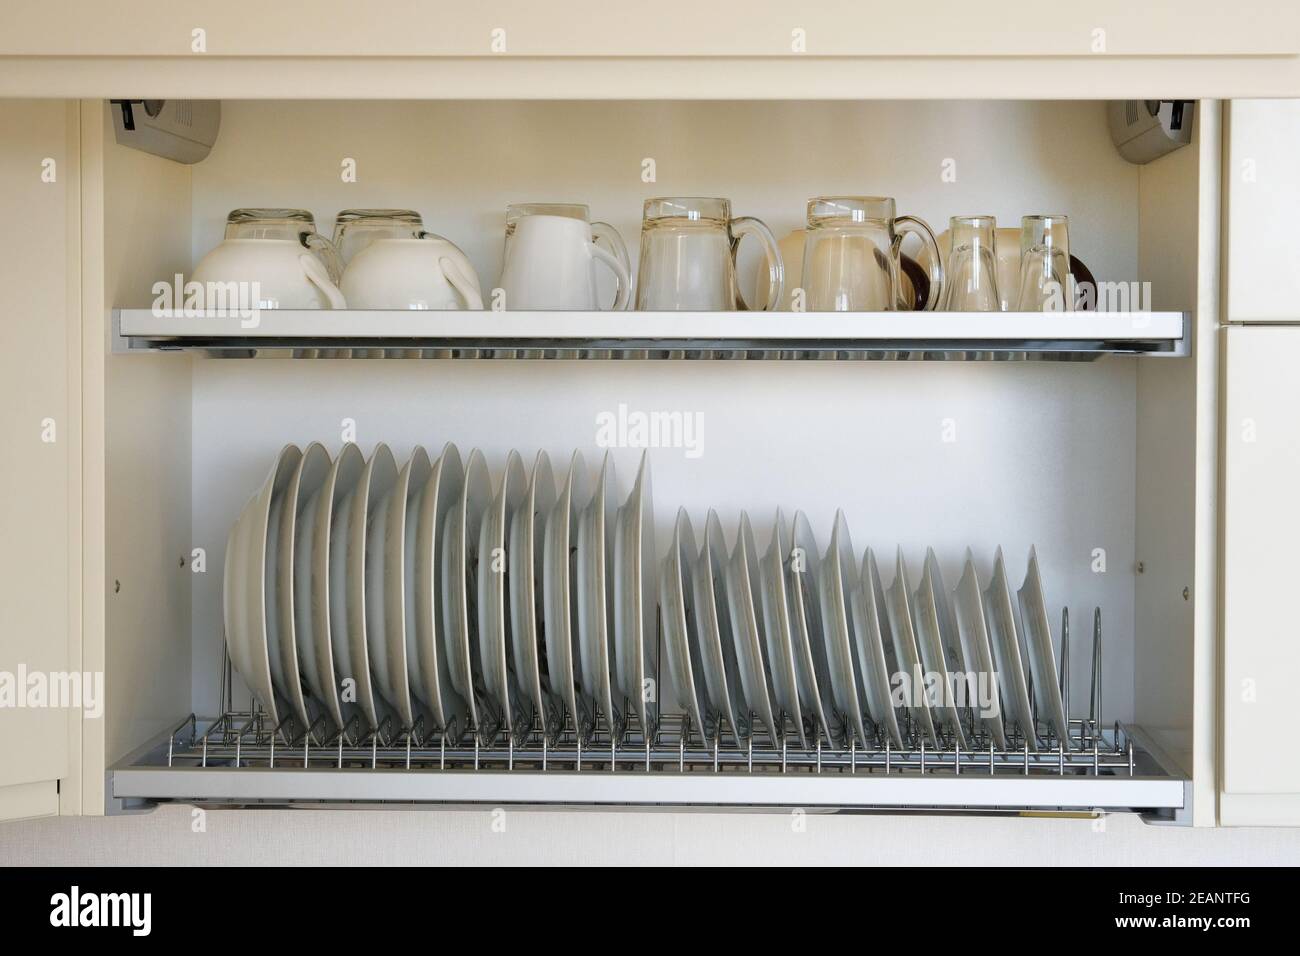 Étagère pour vaisselle séchage dans la cuisine moderne. Vaisselle en verre  blanc et en céramique propre et lavée sur un support en métal à l'intérieur  du placard de cuisine Photo Stock -